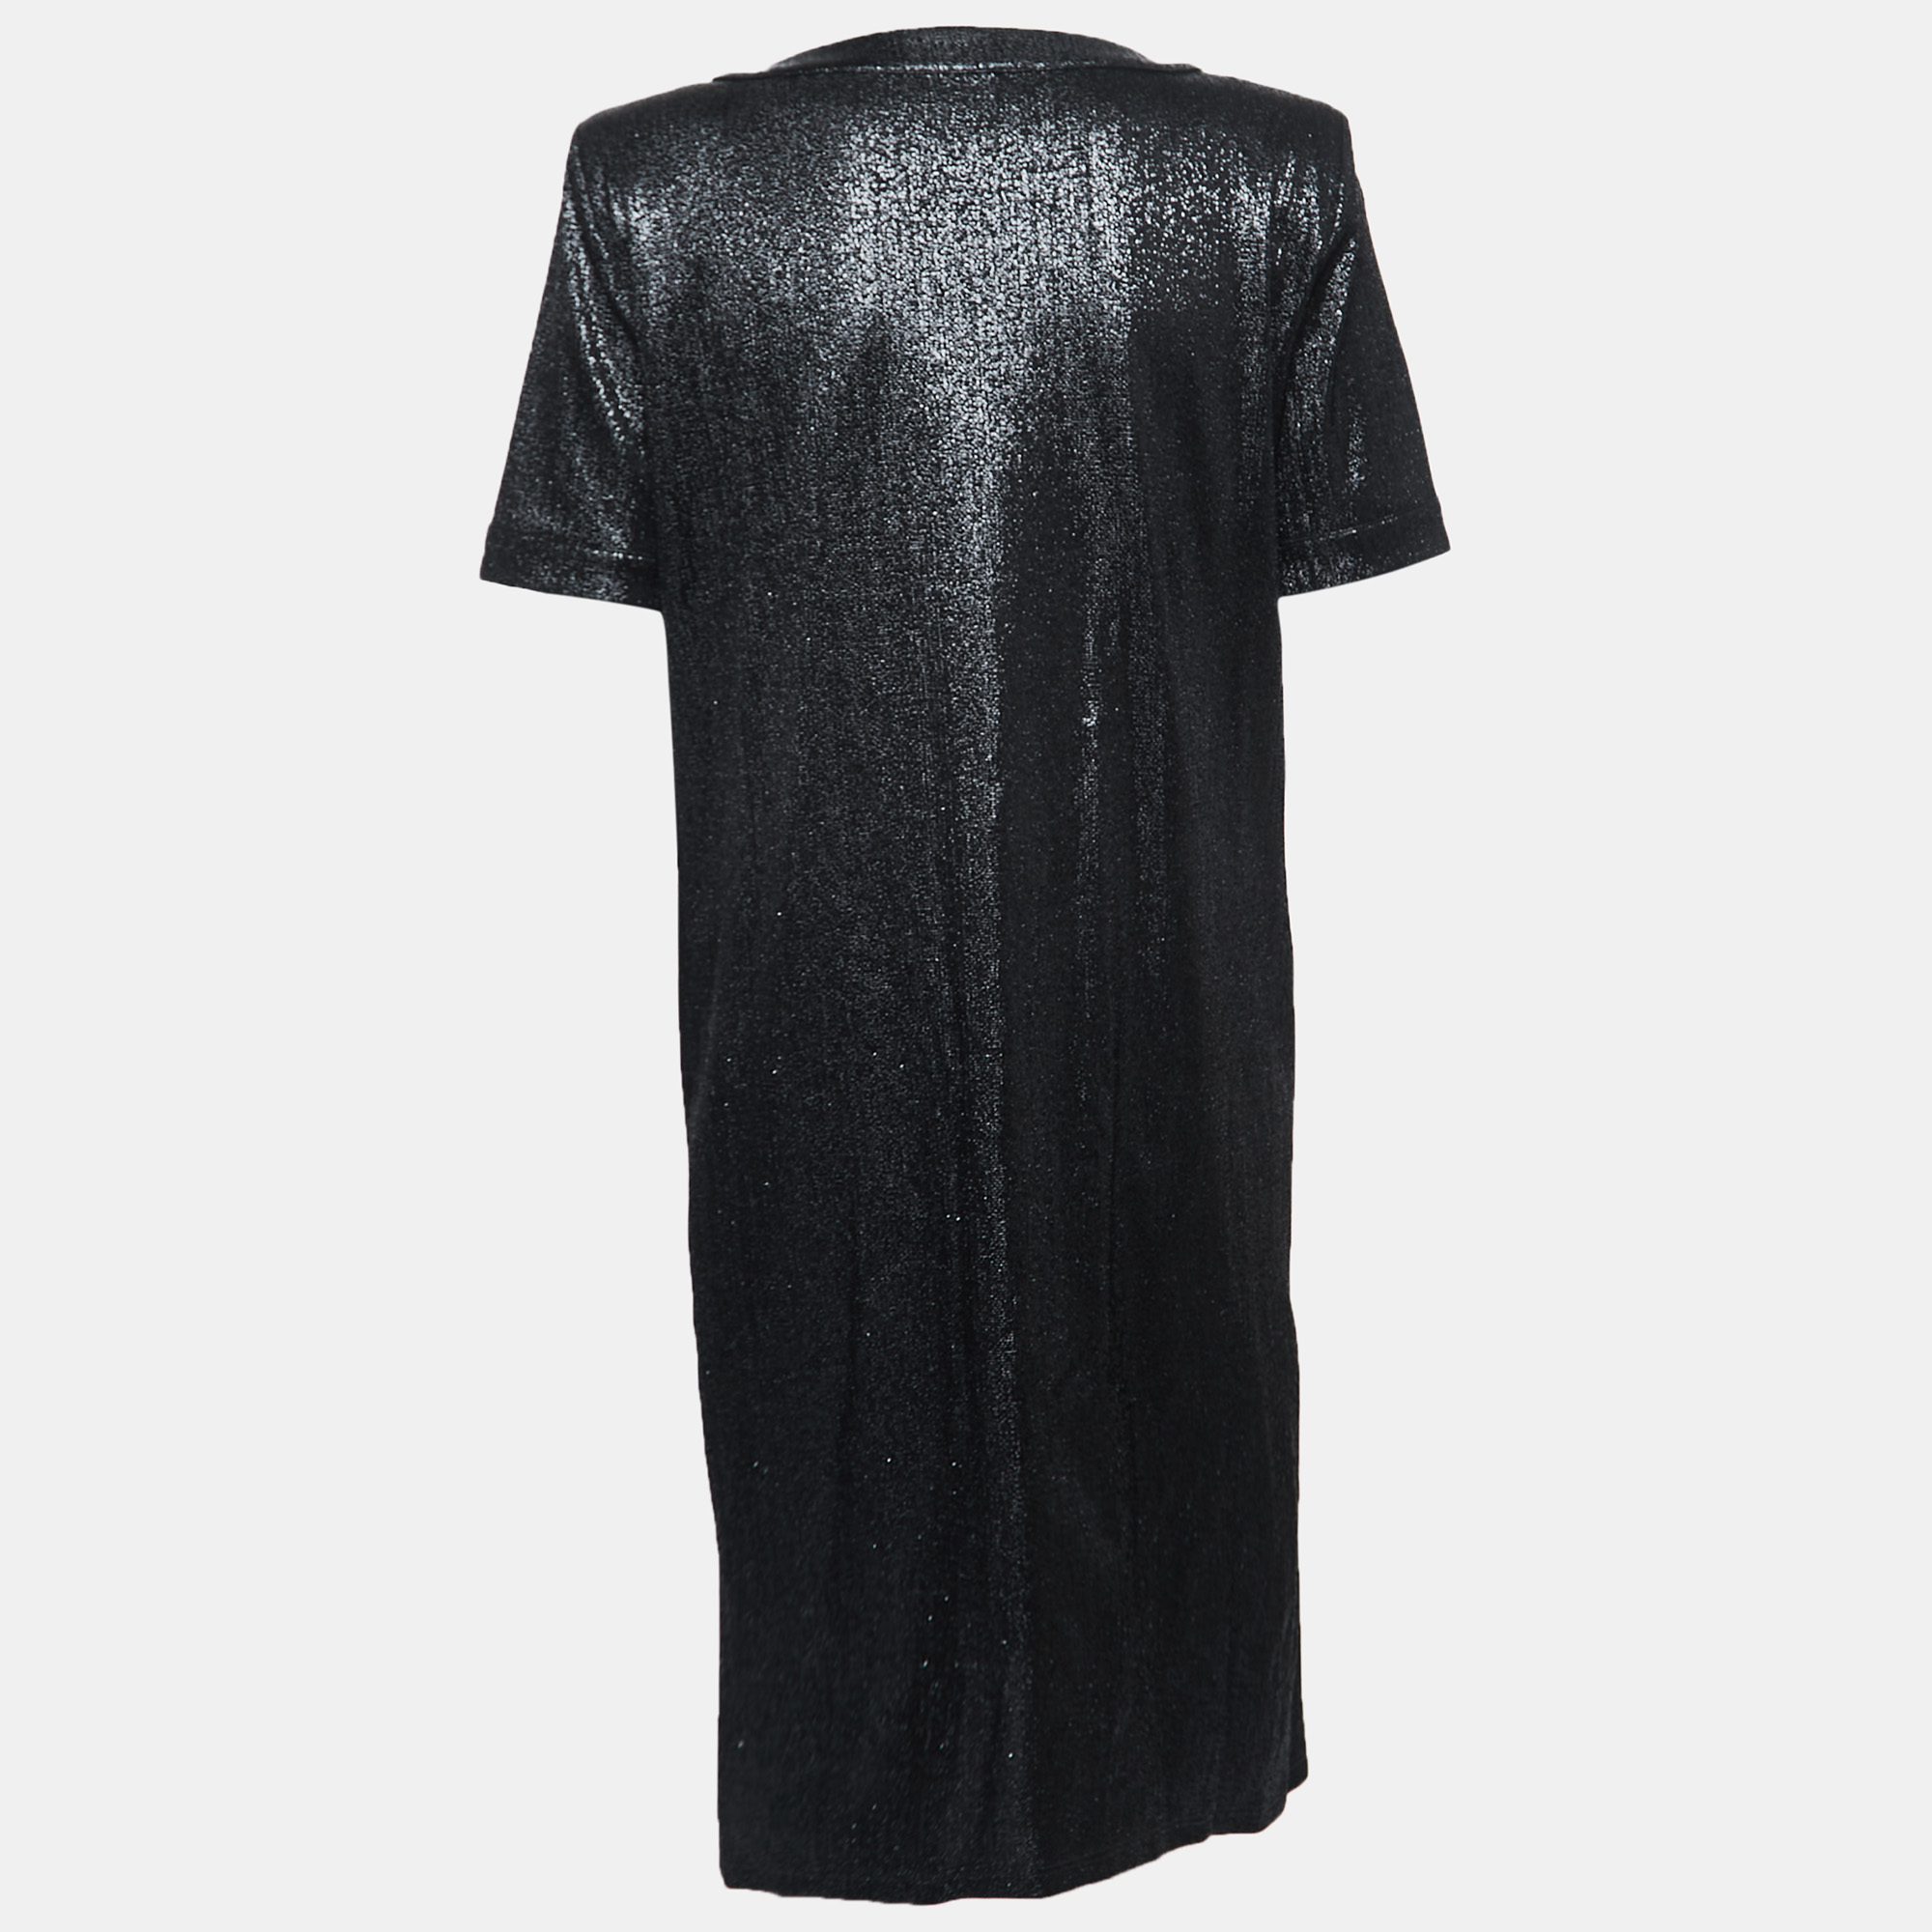 

Chanel Black Metallic Lurex Knit Shift Dress